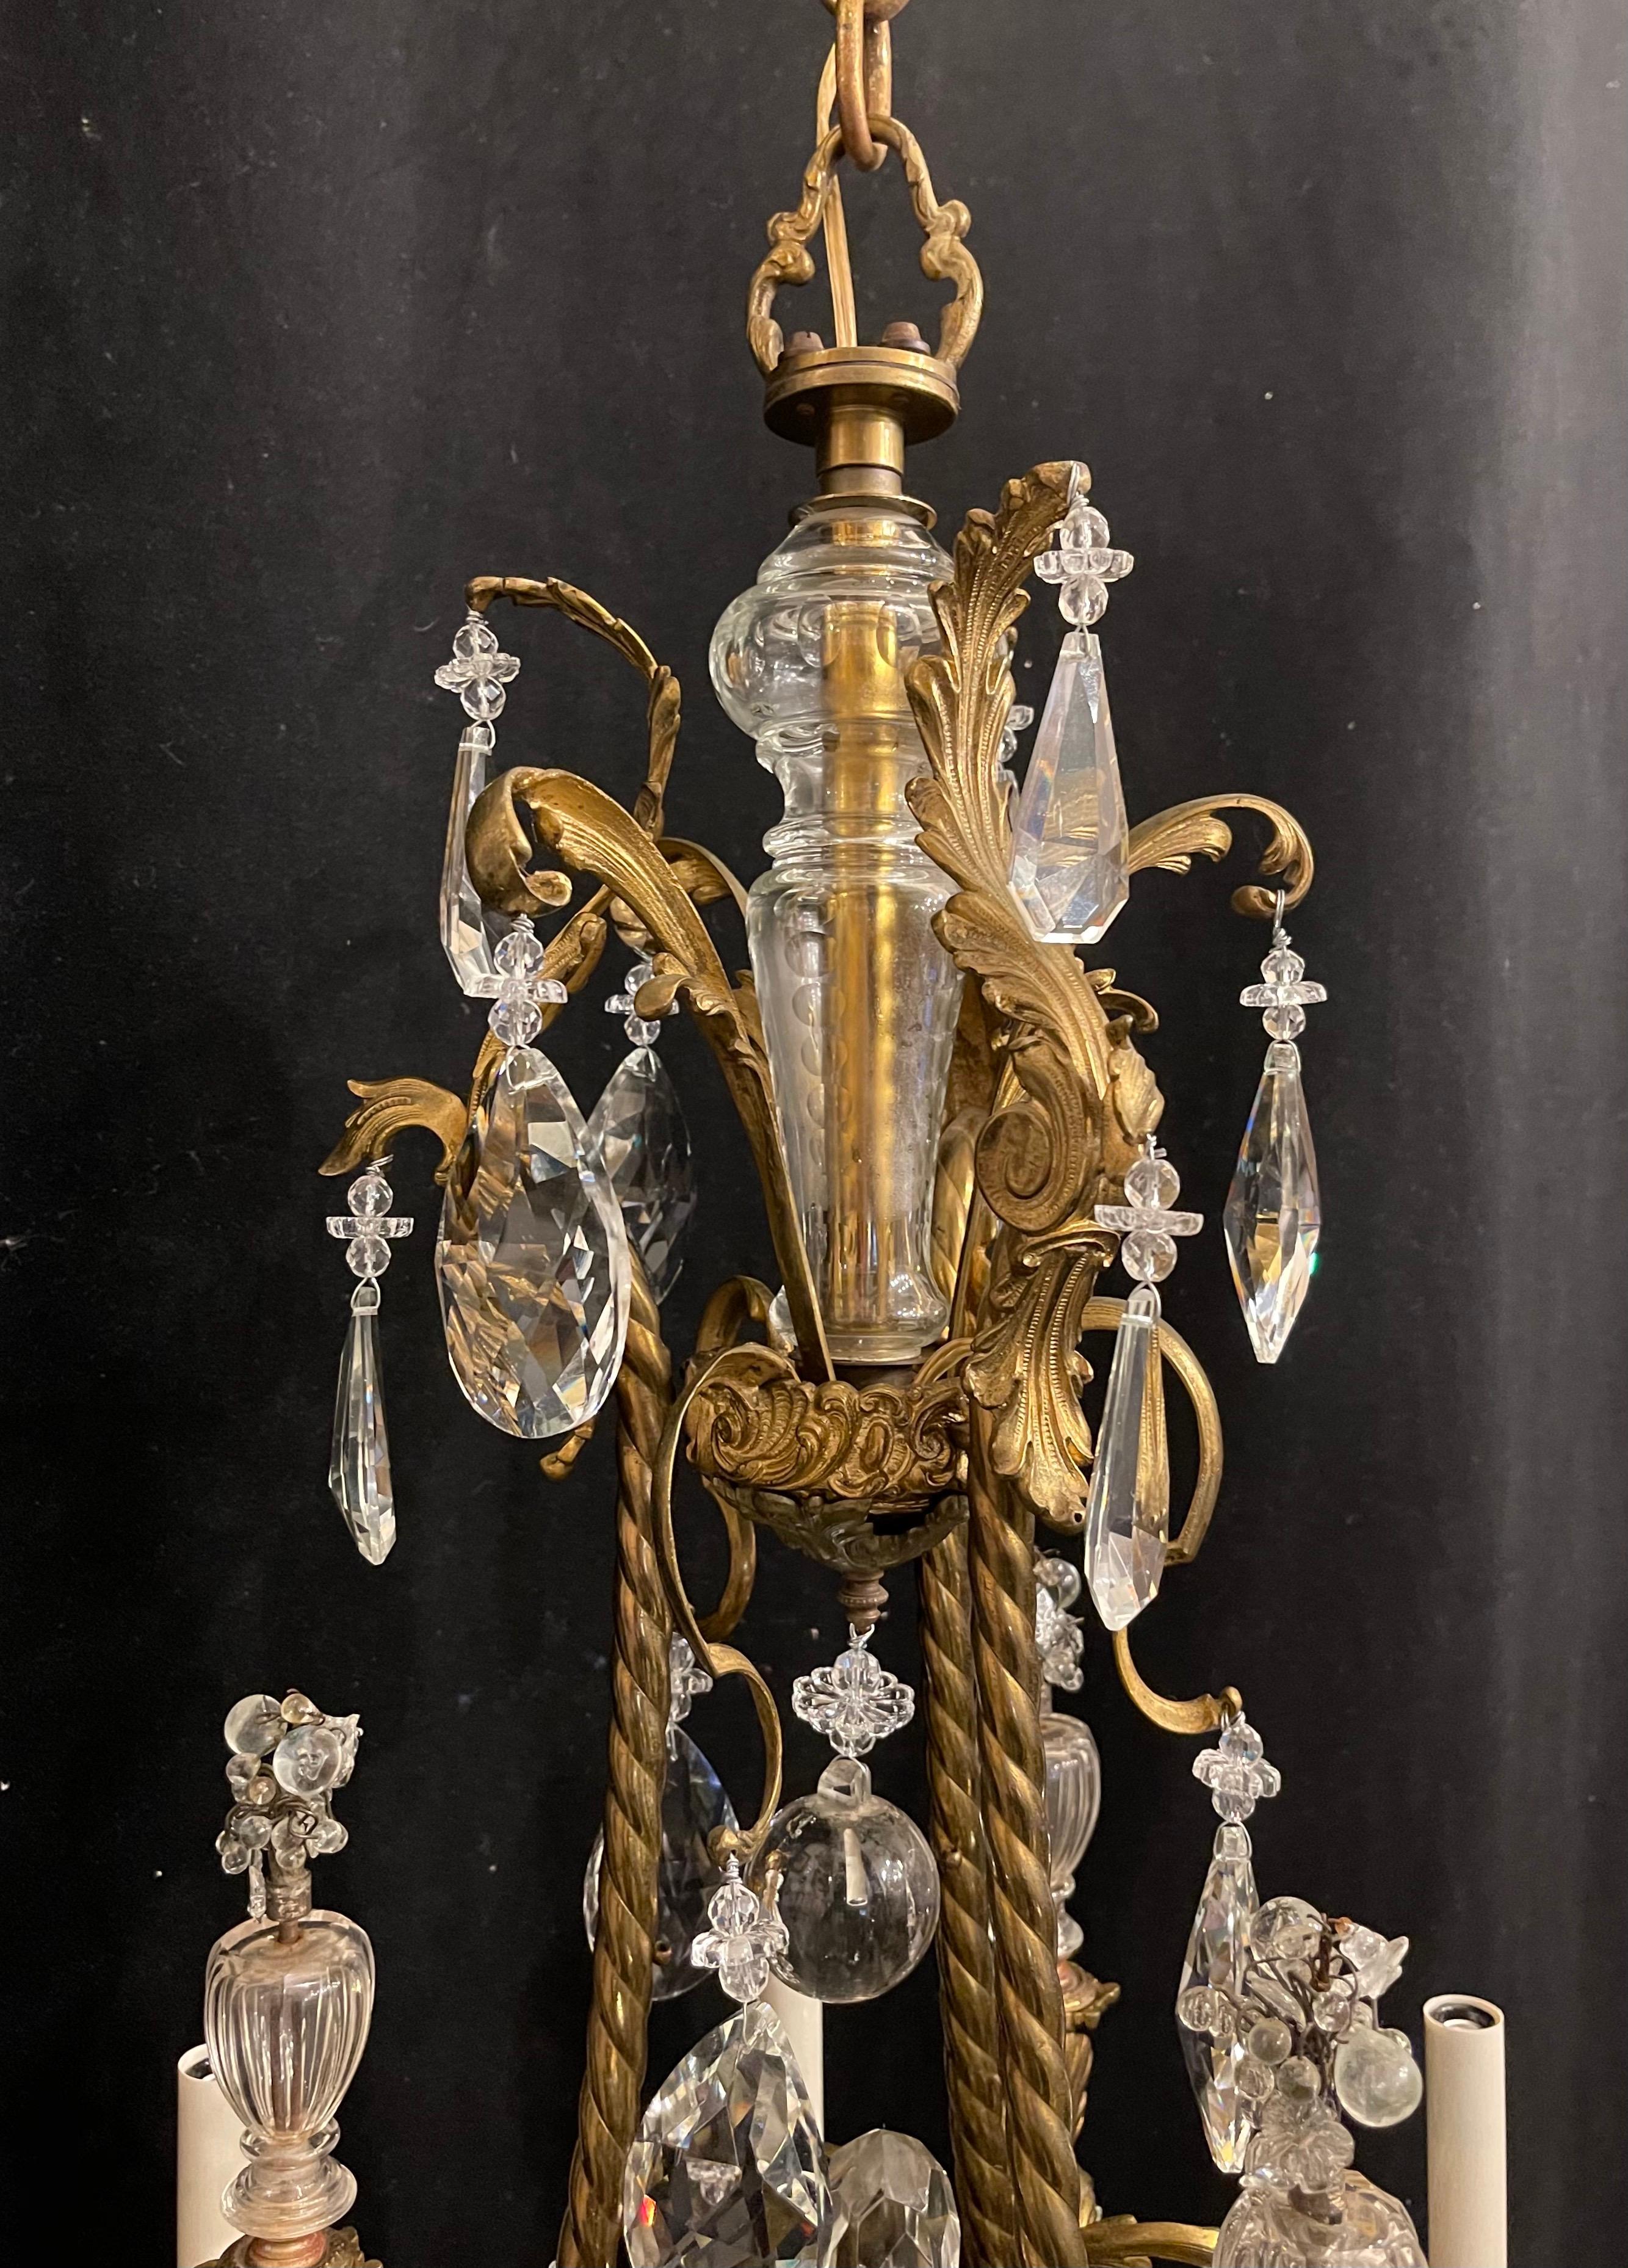 Un magnifique lustre Rococo français en bronze doré, avec 6 candélabres, entièrement recâblé avec de nouvelles douilles et livré avec une chaîne et du matériel de montage pour l'installation.